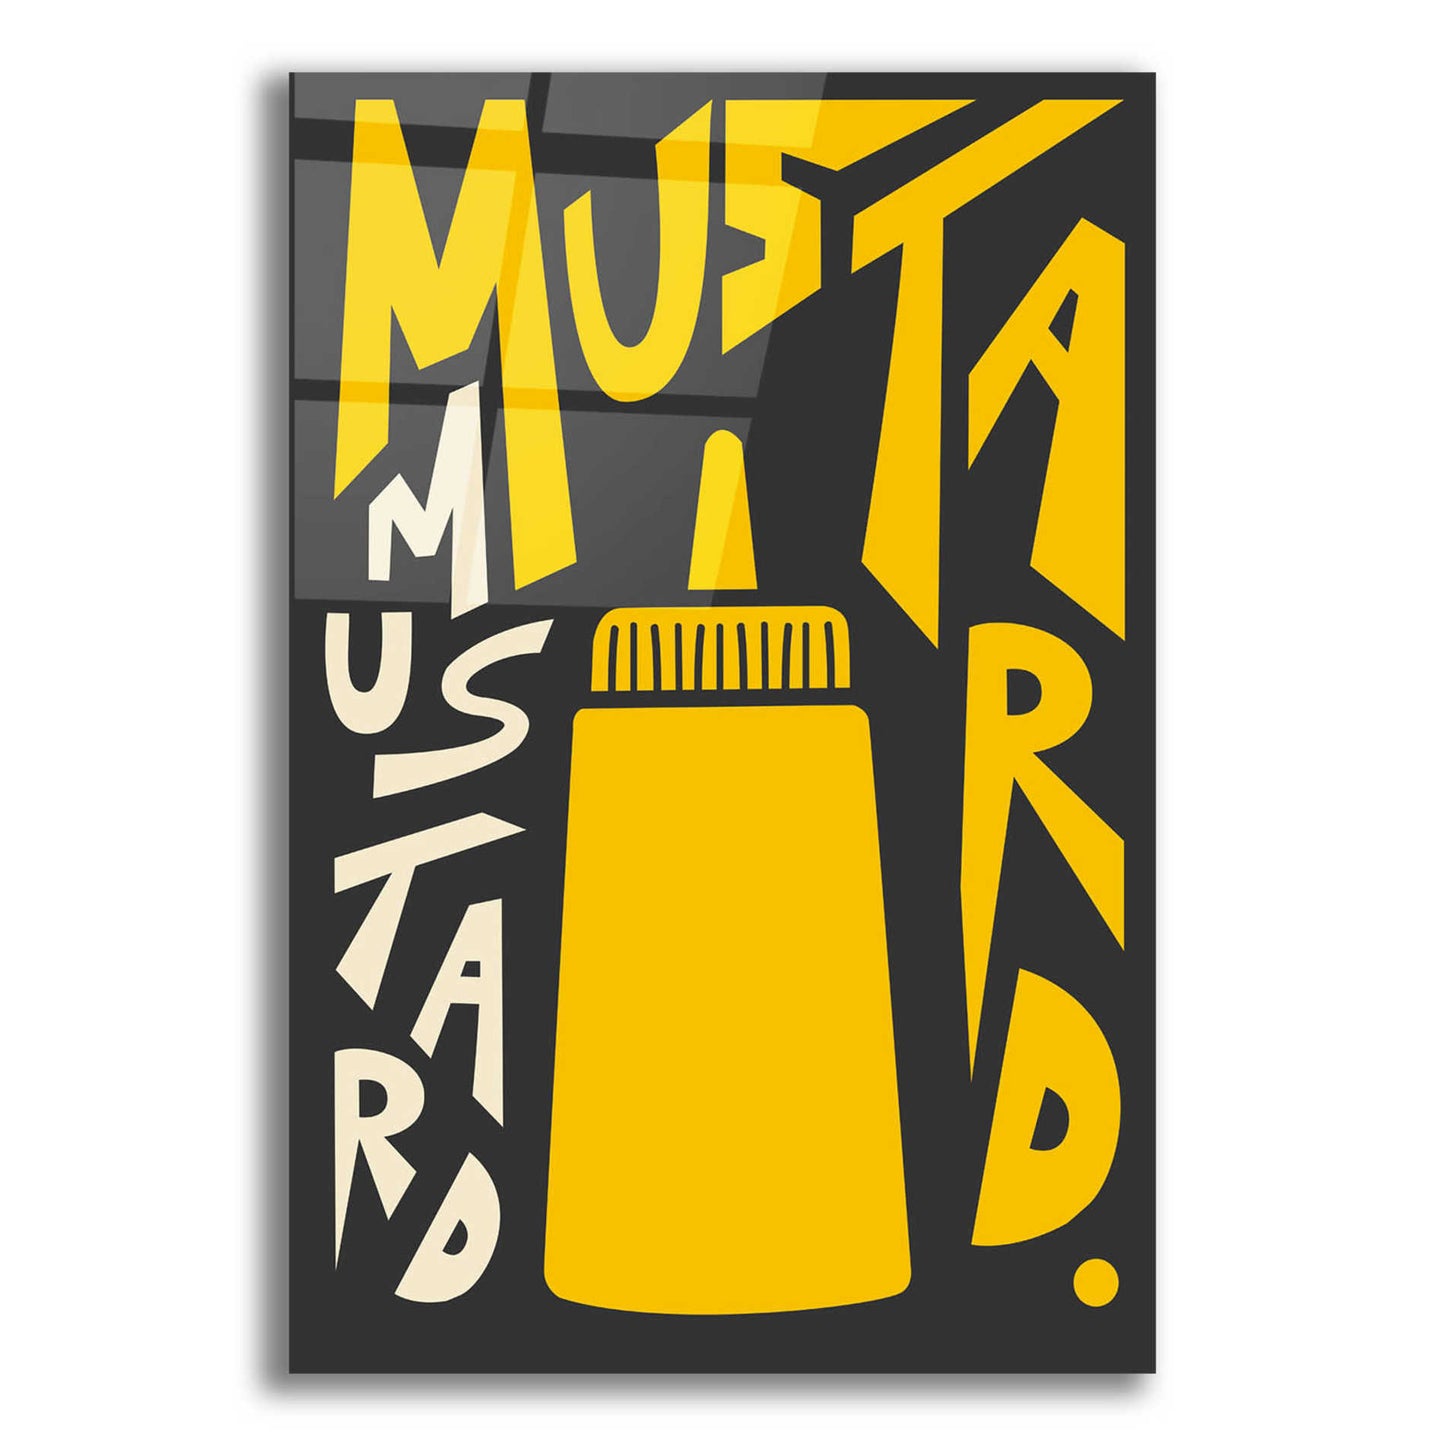 Epic Art 'Kitchen Mustard' by Ayse, Acrylic Glass Wall Art,12x16